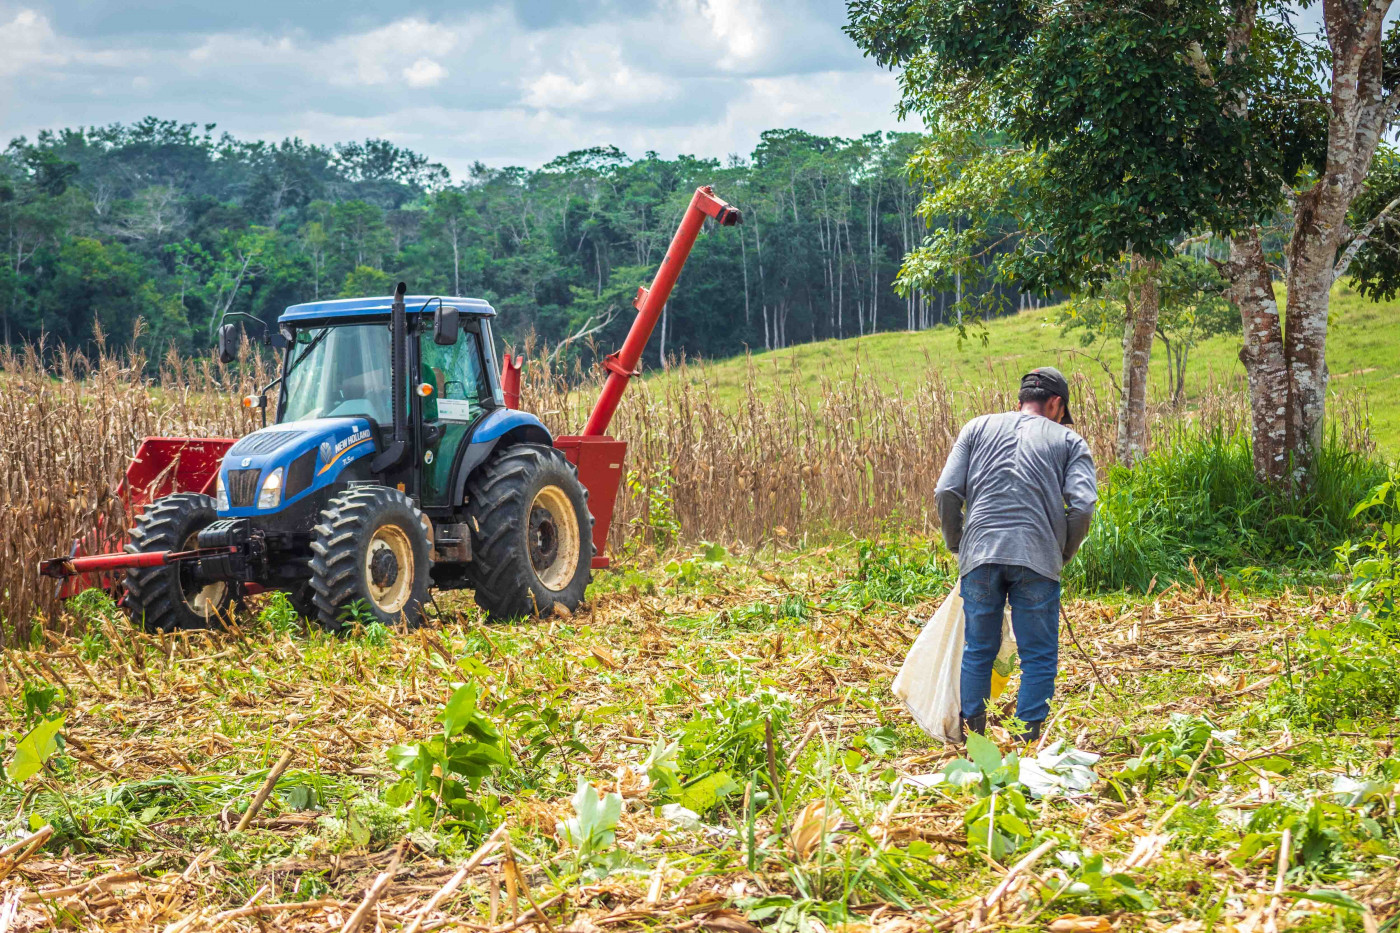 Agricultor trabalha na colheita do milho em propriedade rural da Brasileia, no interior do Acre. Ao lado, um trator azul e vermelho.